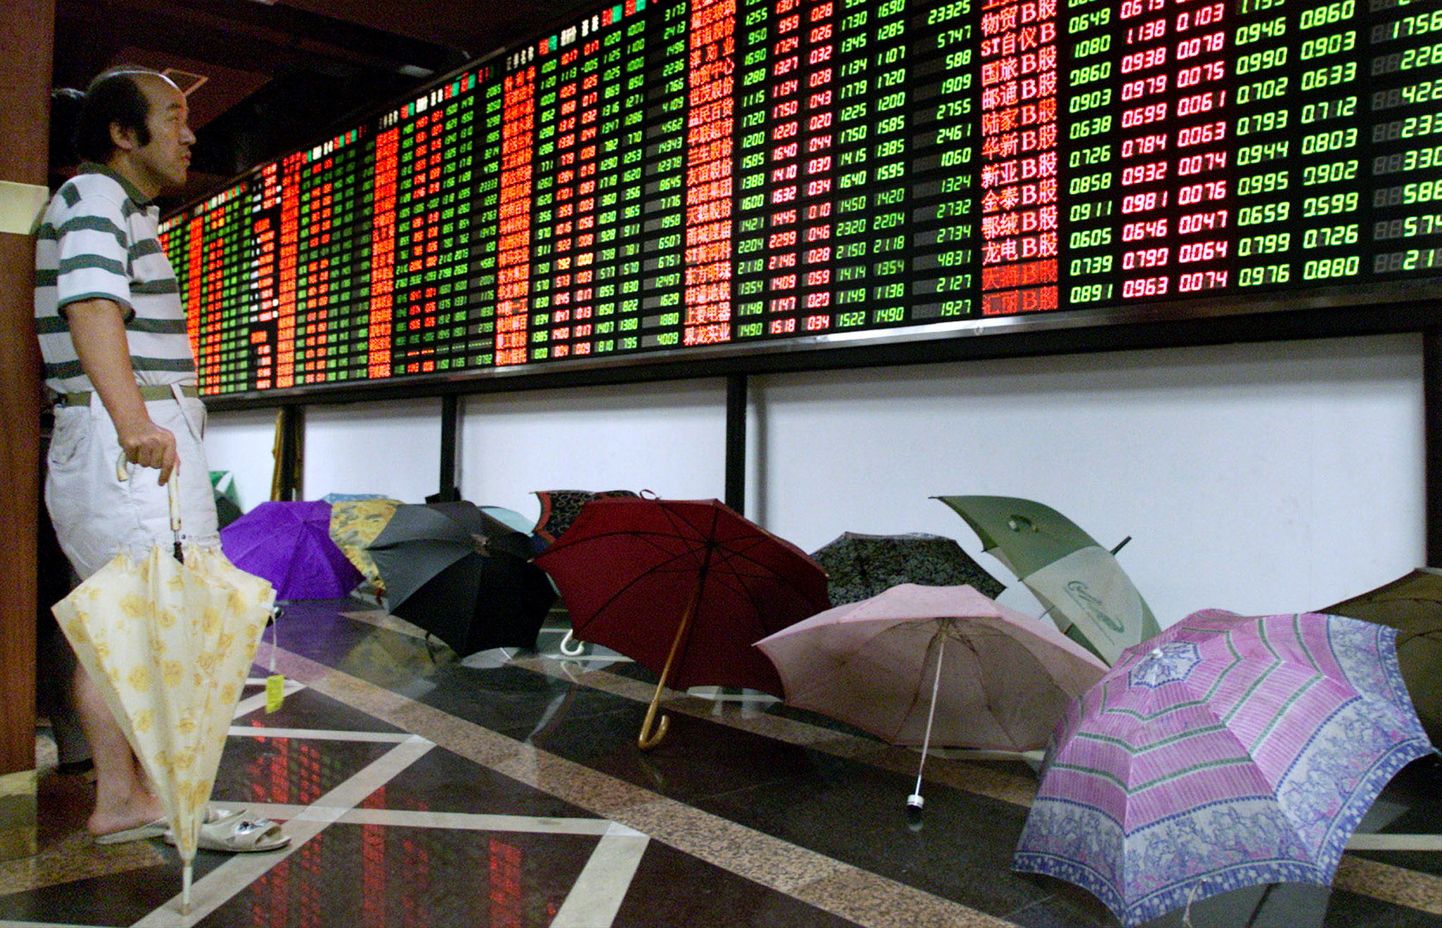 Hiina väikeinvestor jälgib börsiinfot